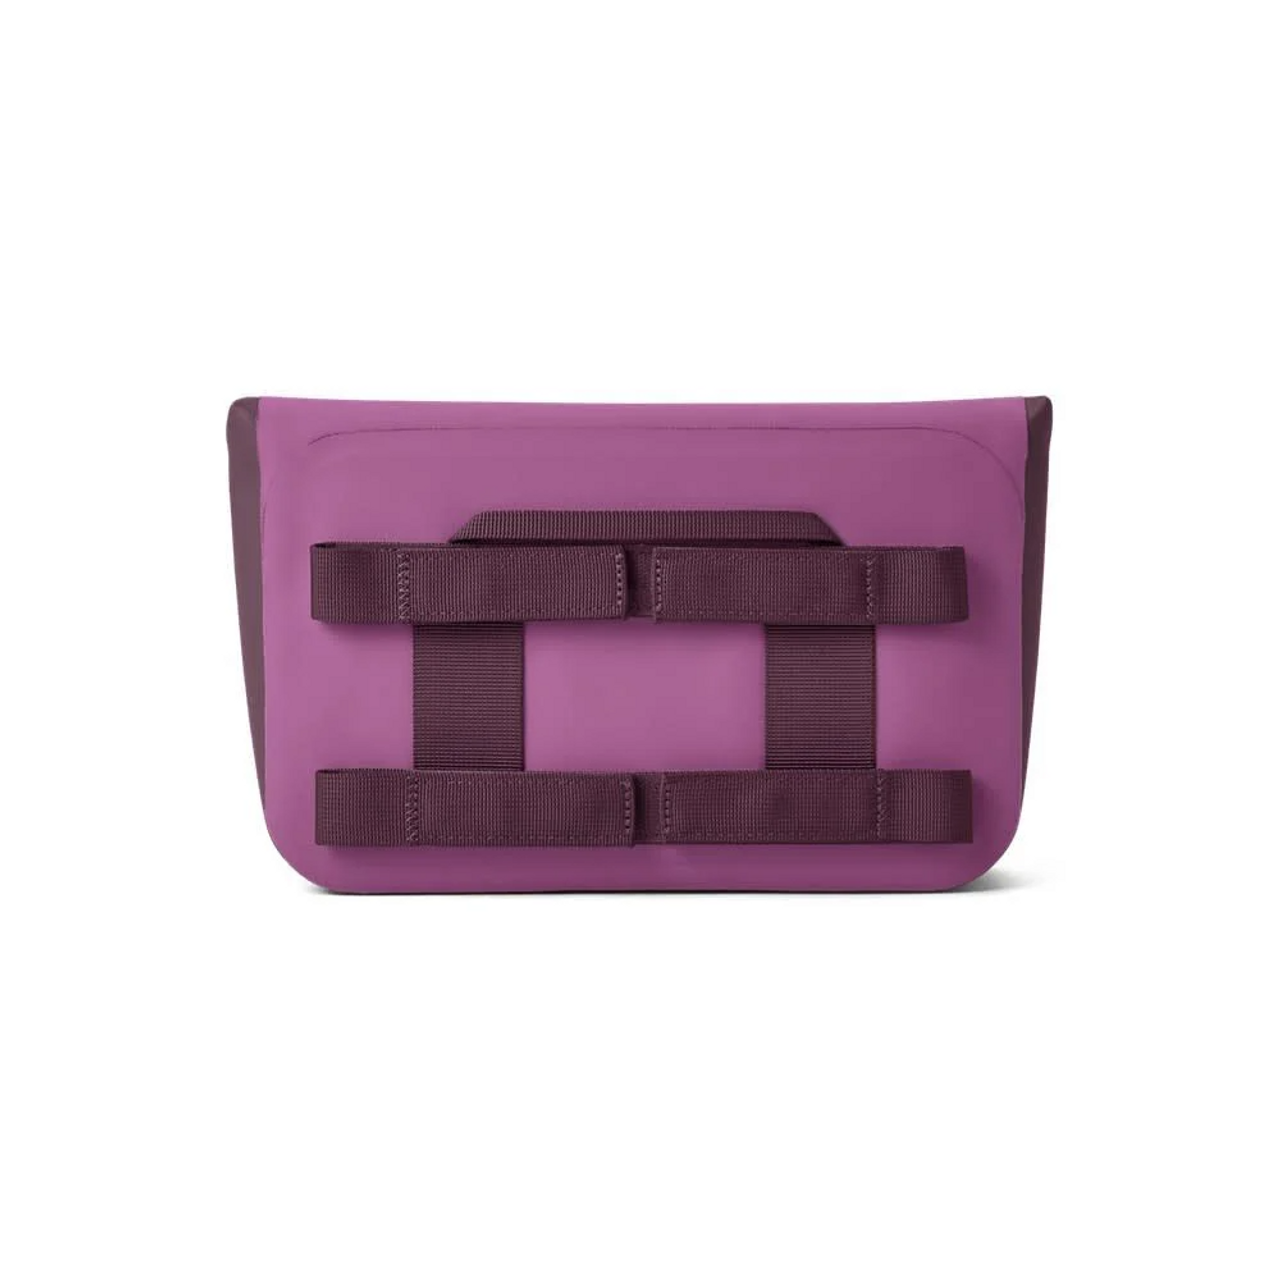 Yeti Sidekick Dry Gear Case Nordic Purple 